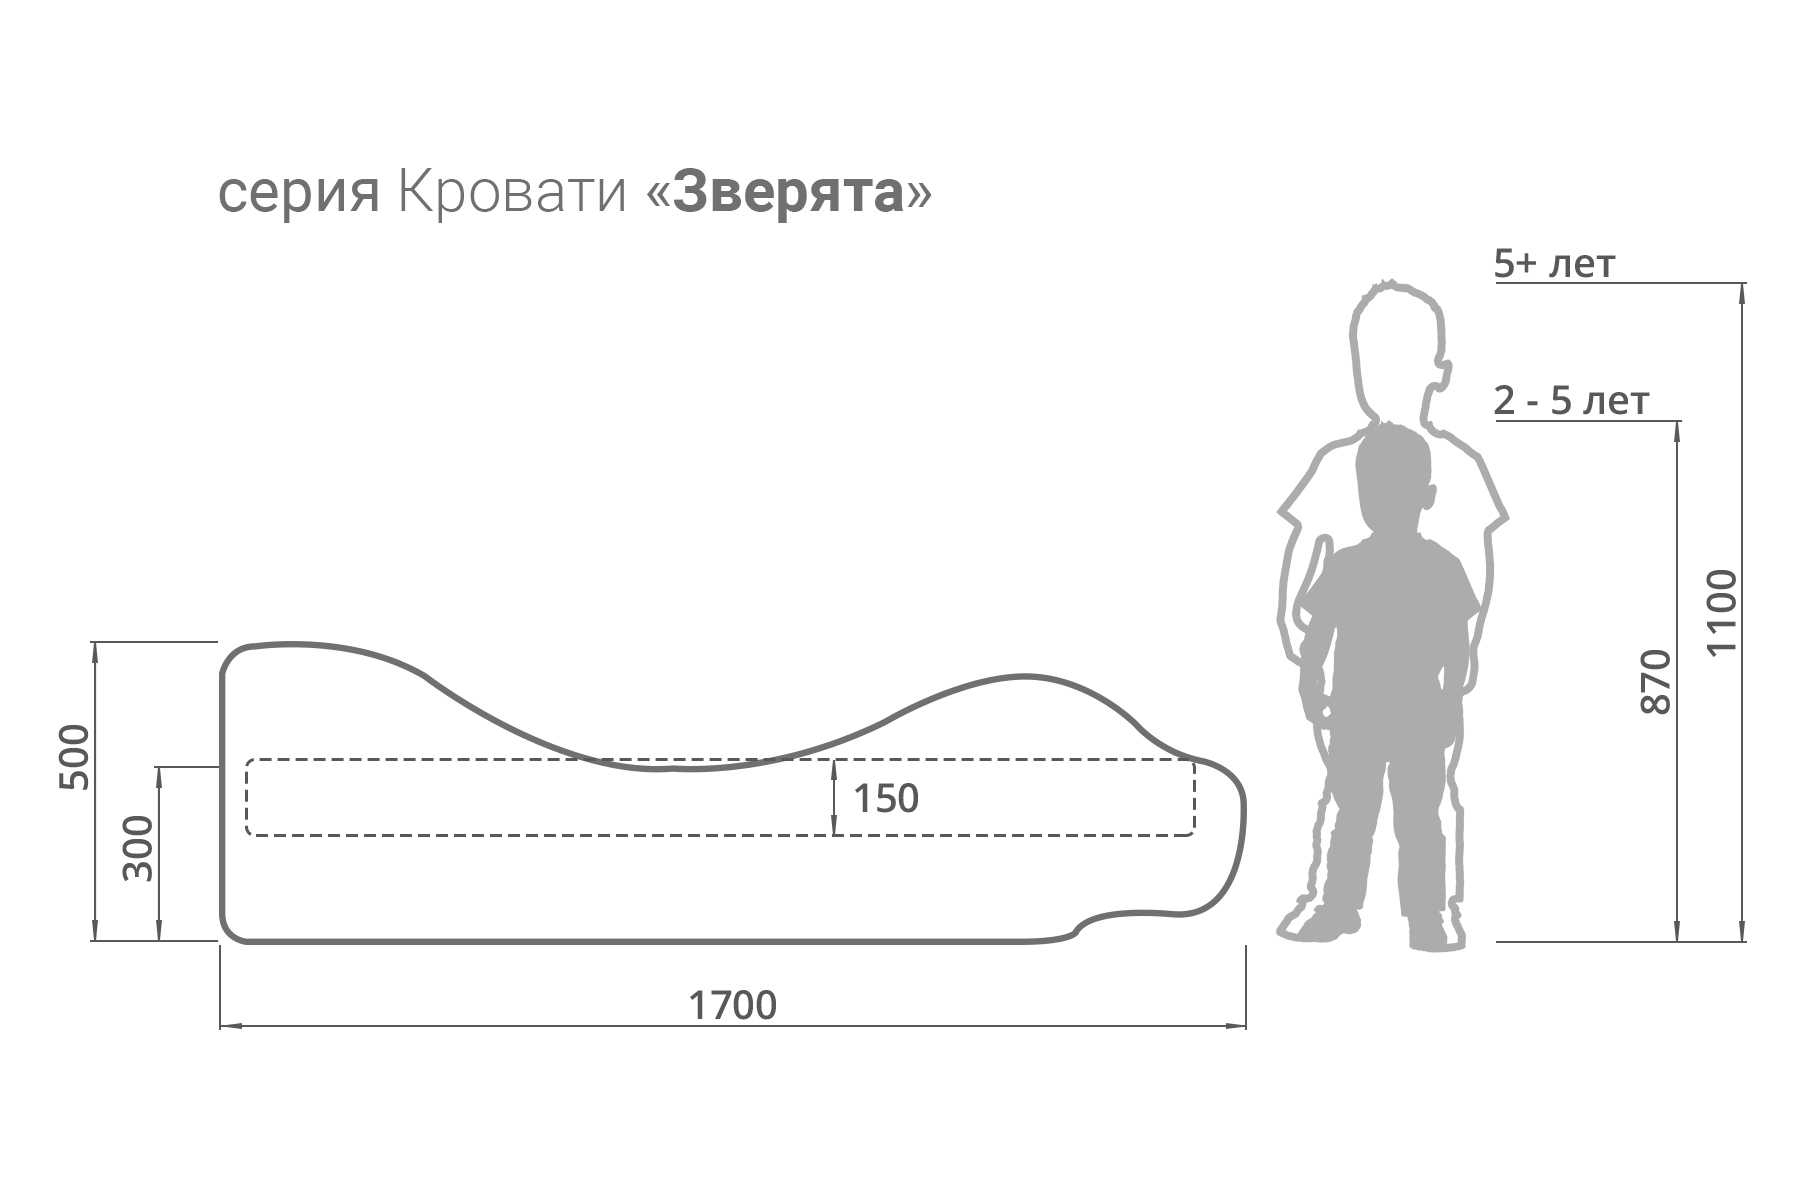 Размер детского матраса. таблица размеров детских матрасов